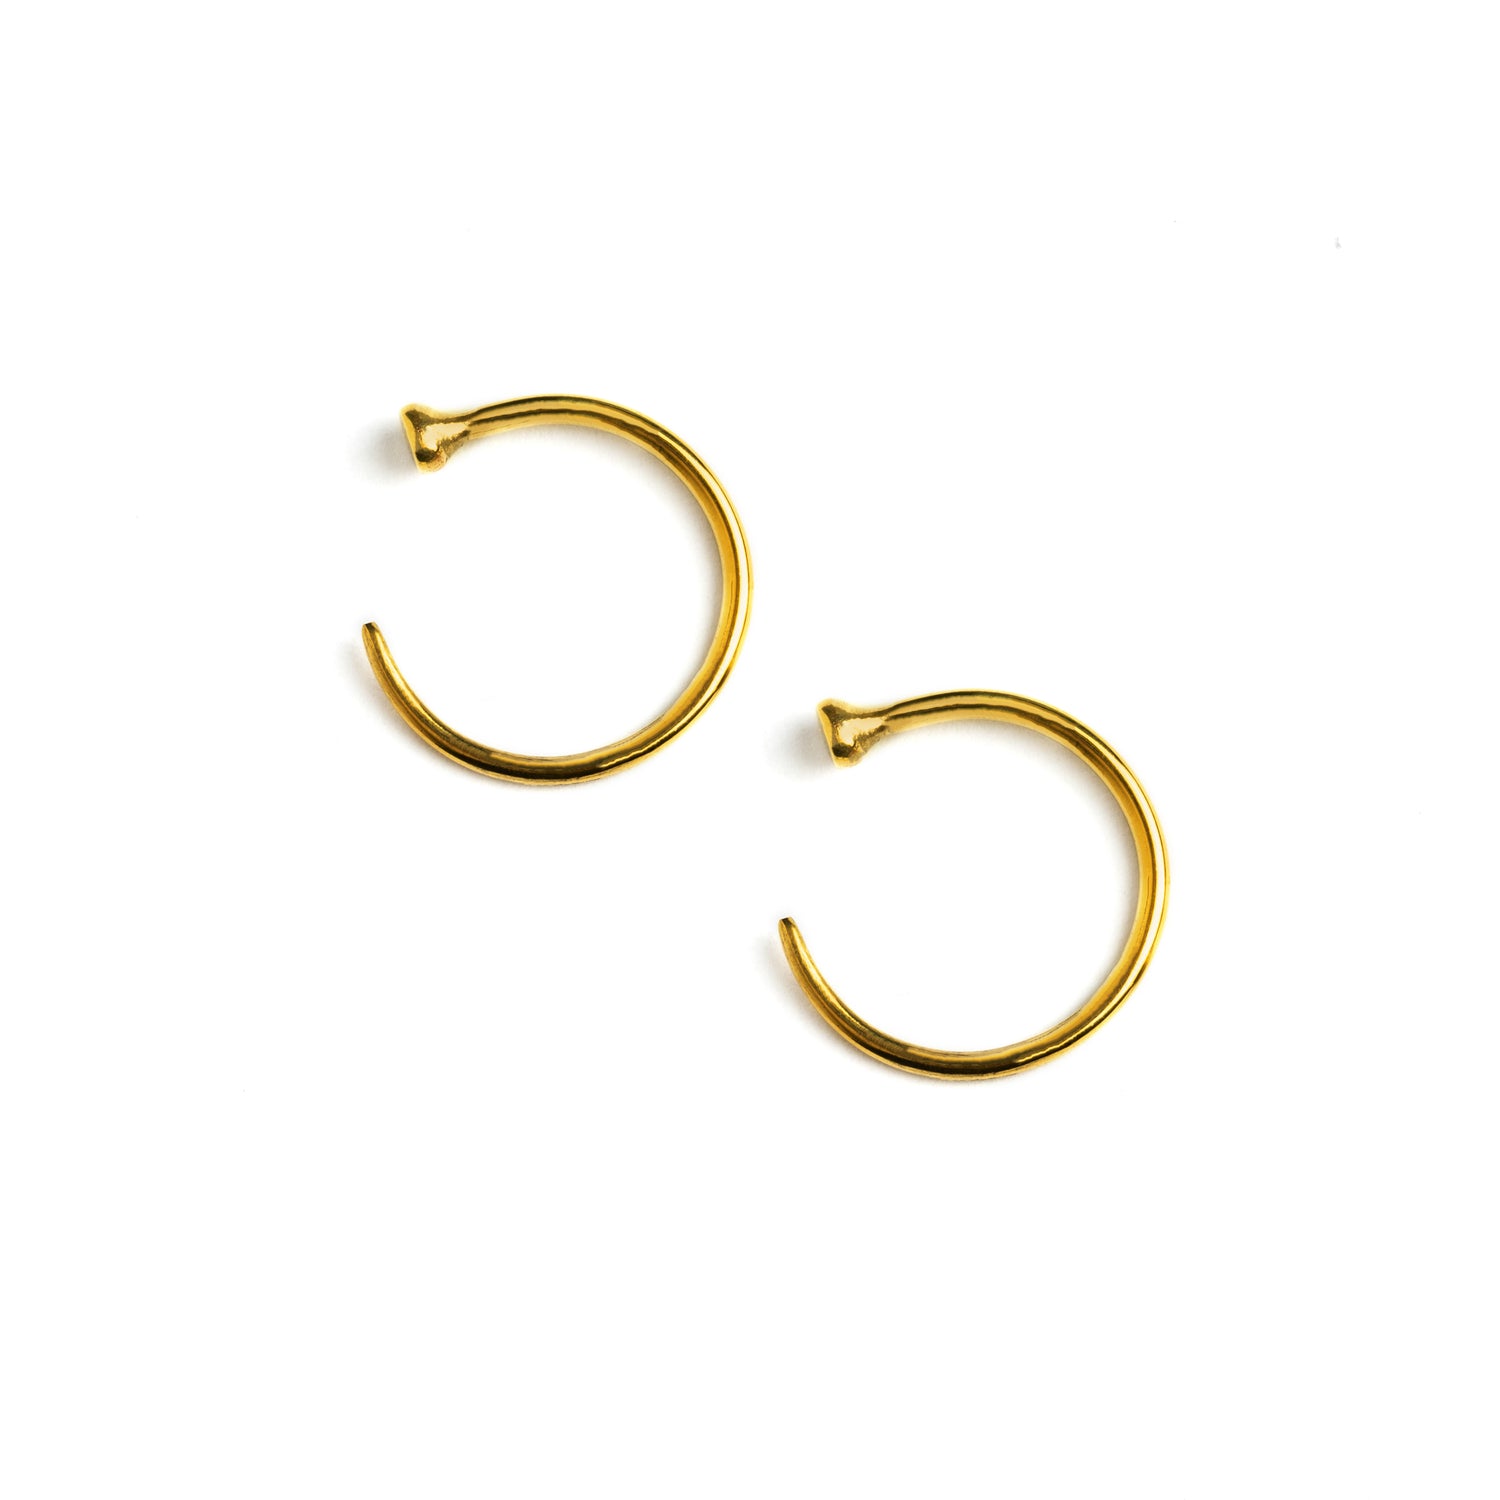 pair of open hoop golden brass wire earrings side view